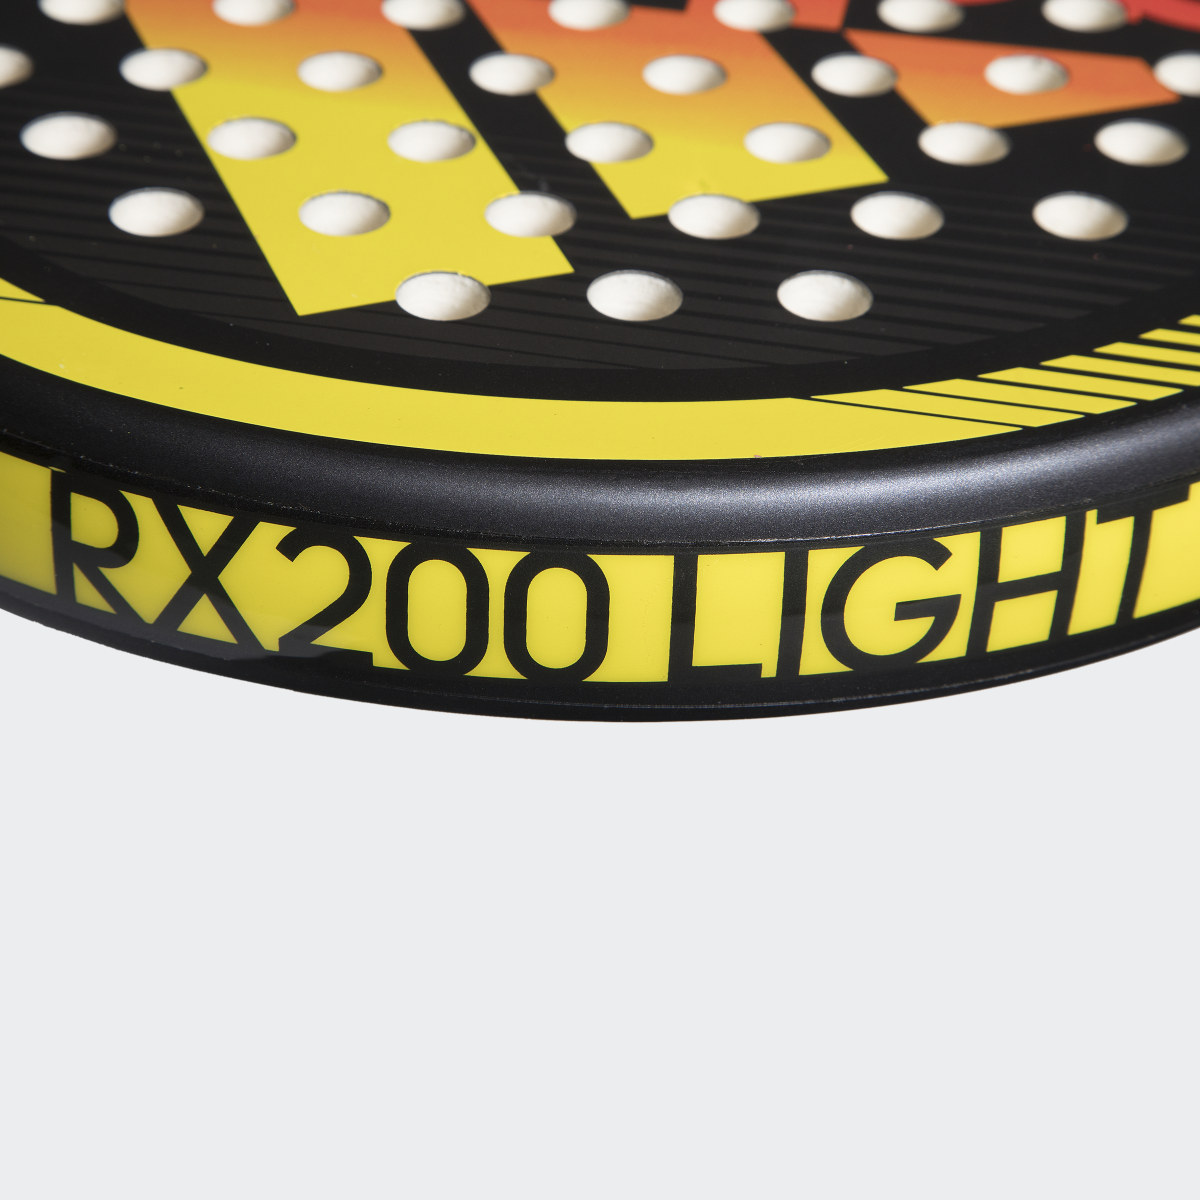 Adidas RX 200 Light Racquet. 6